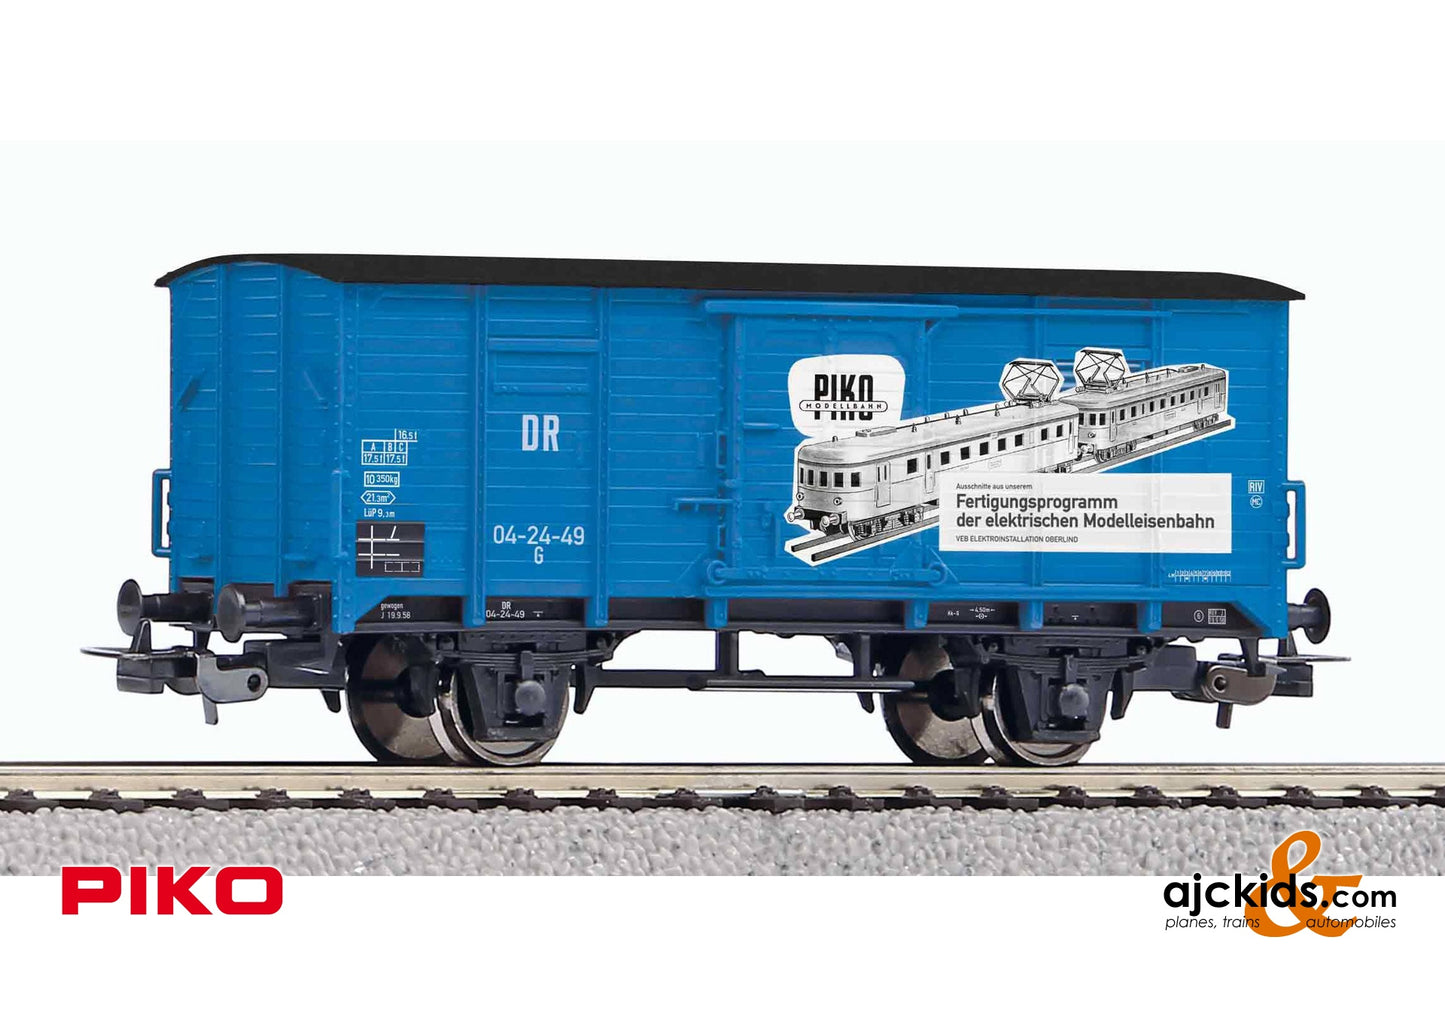 Piko 24502 - Covered Freight Car G02 VEB PIKO DR III, EAN: 4015615245025